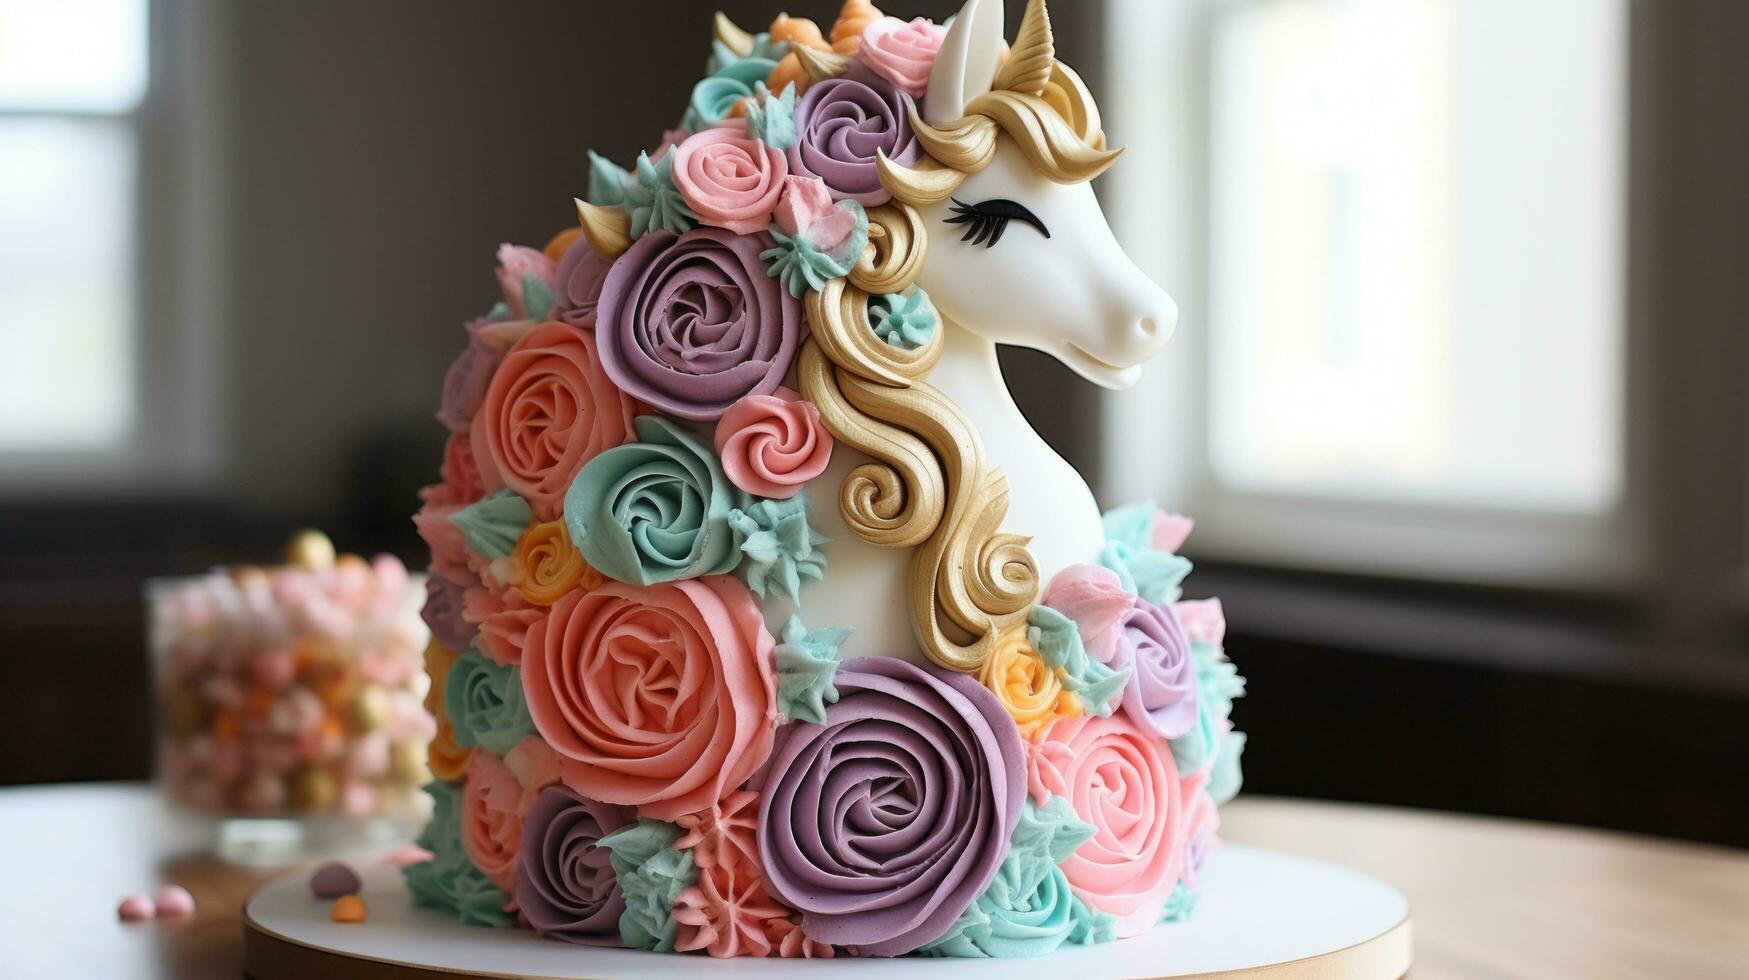 Whimsical unicorn cake with rainbow layers photo